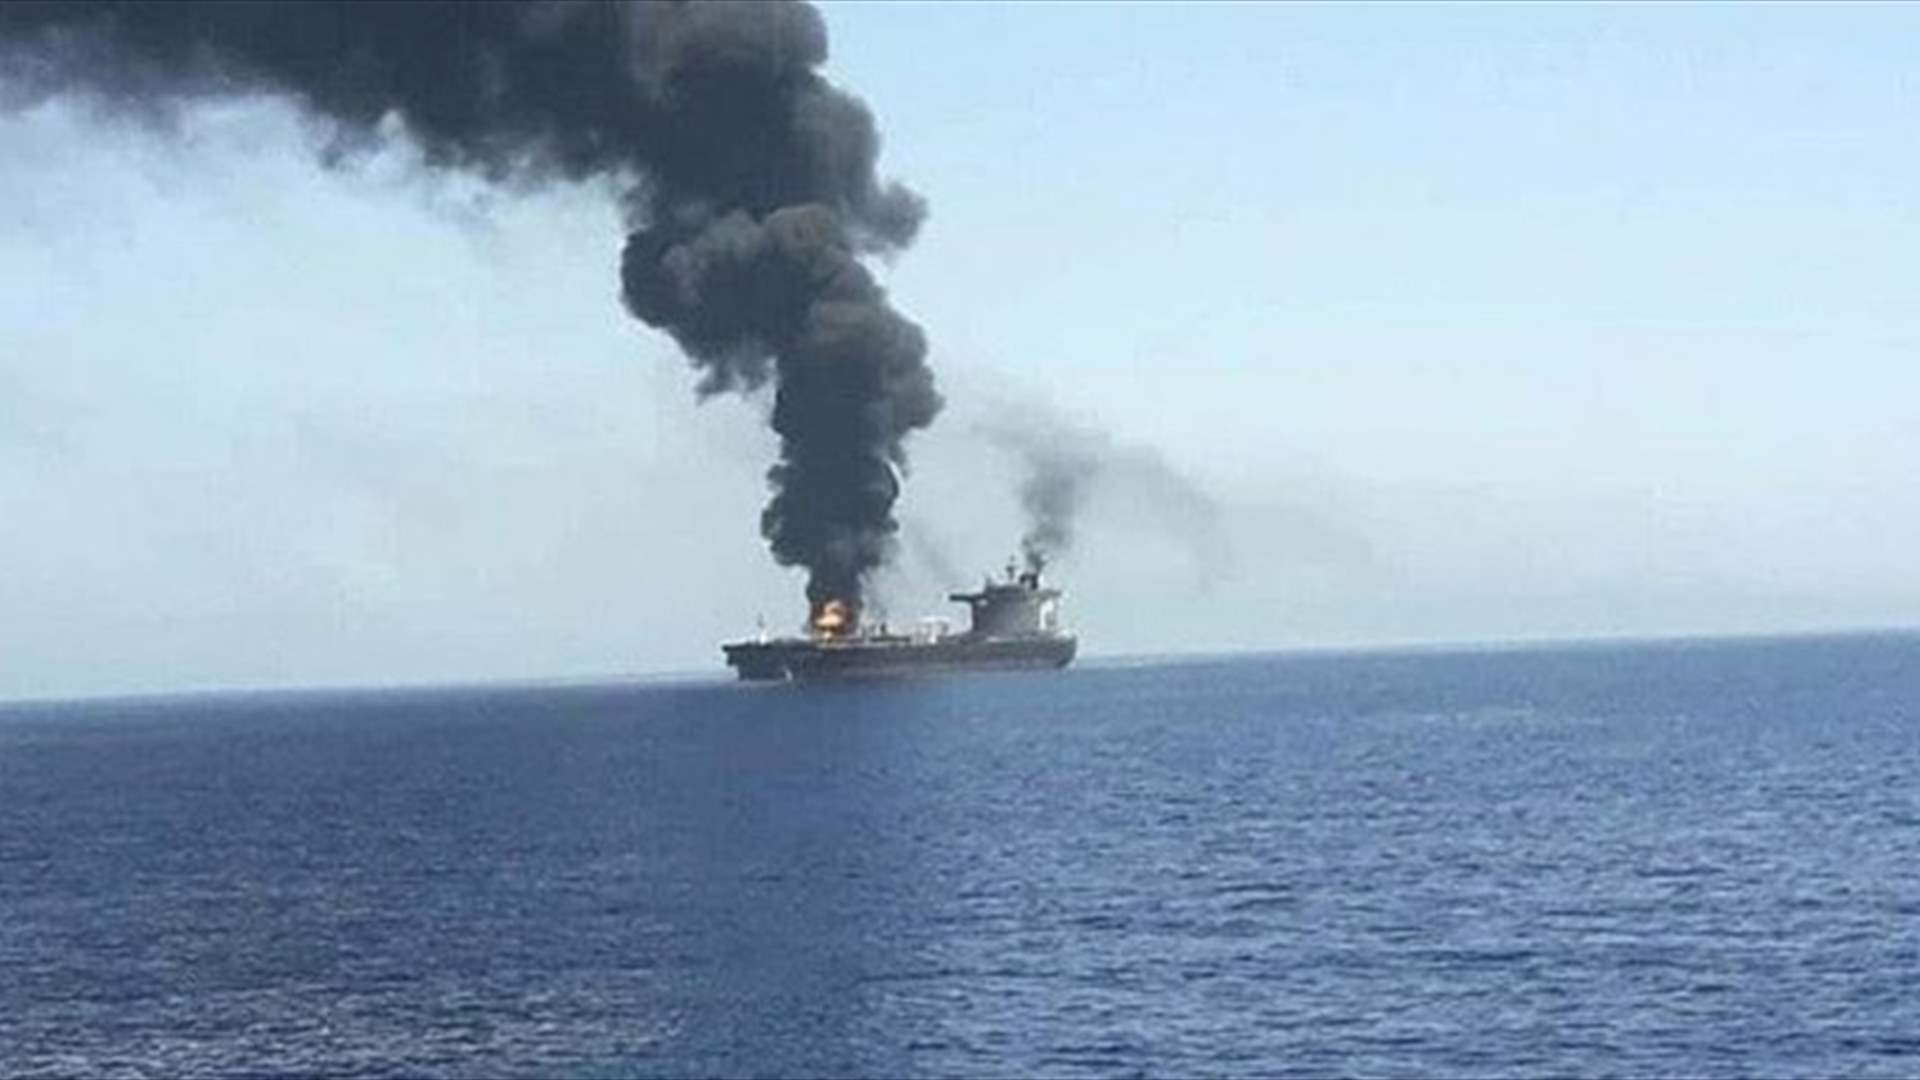 إصابة سفينة بصاروخ قبالة سواحل اليمن